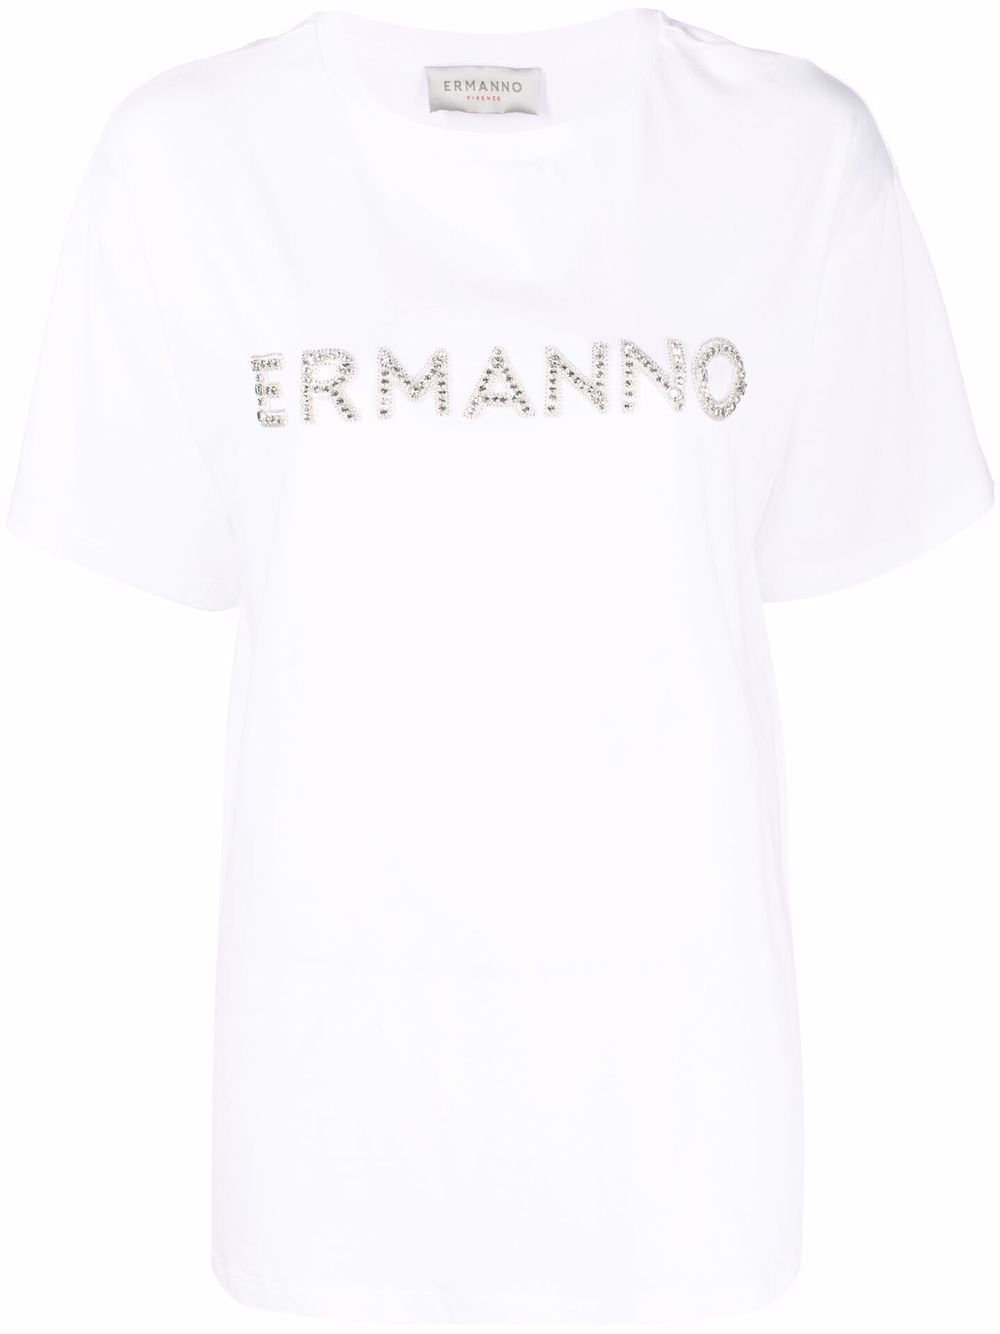 фото Ermanno firenze футболка с логотипом